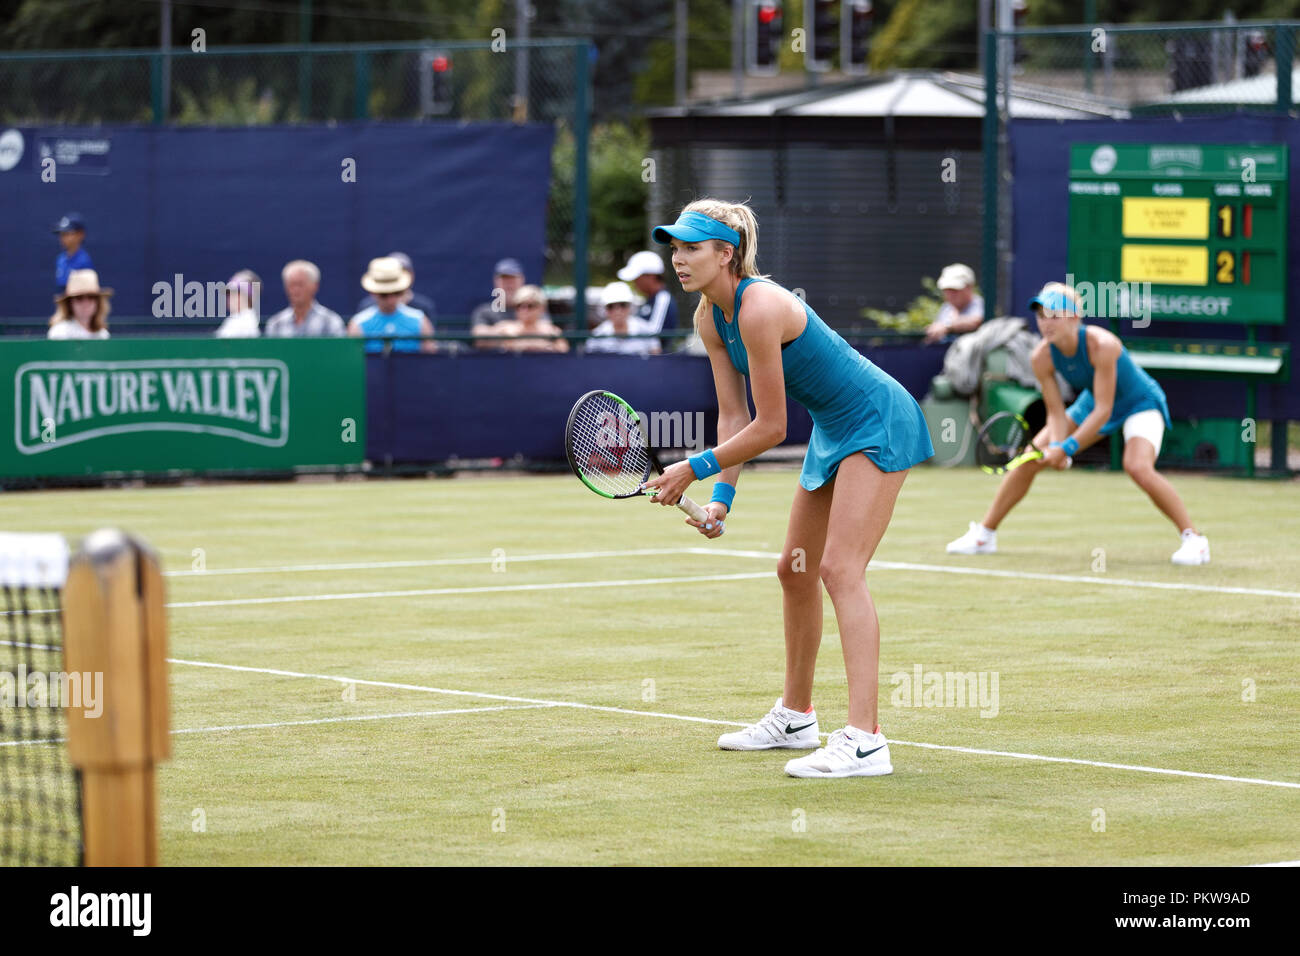 Der britische Tennisspieler Katie Boulter (Vordergrund) und Katie Swan (Hintergrund) warten auf ihre Gegner dienen während einer Frauen Doppel an einem professionellen Gras Hof Turnier im Vereinigten Königreich. Boulter und Swan spielten zusammen in passenden Outfits. Stockfoto